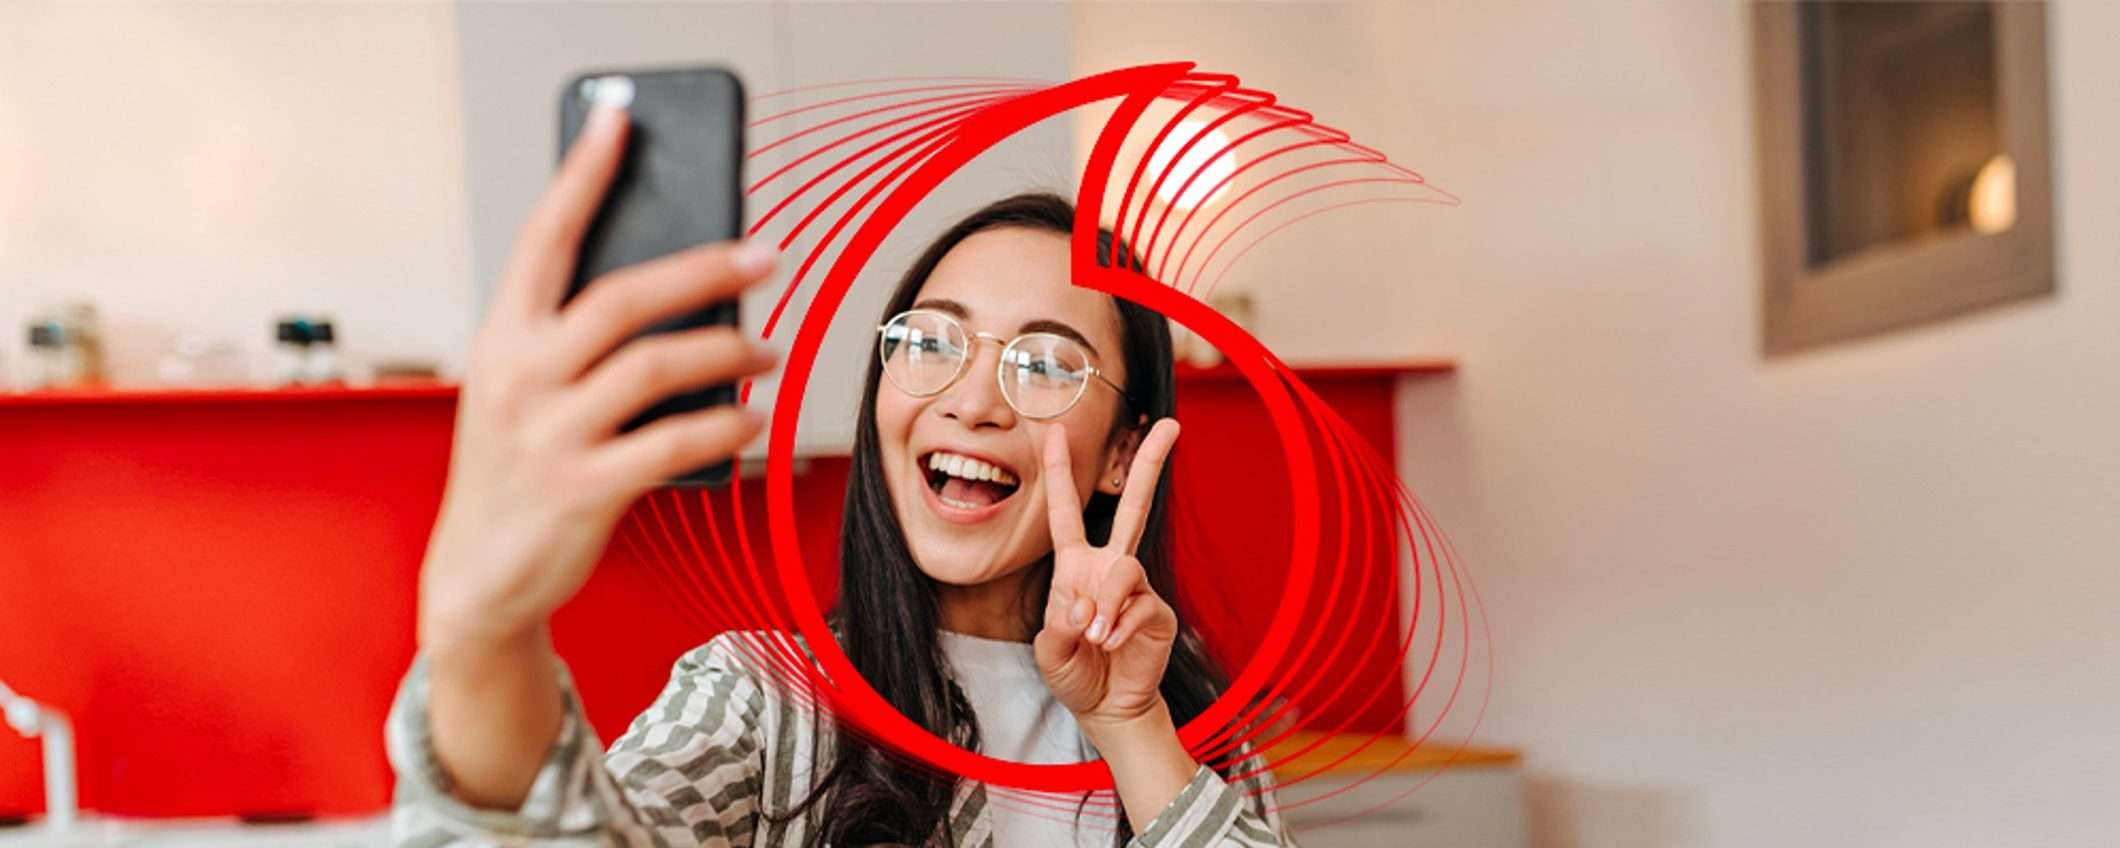 Red Pro: la PROMO Vodafone in 5G a 14,99€